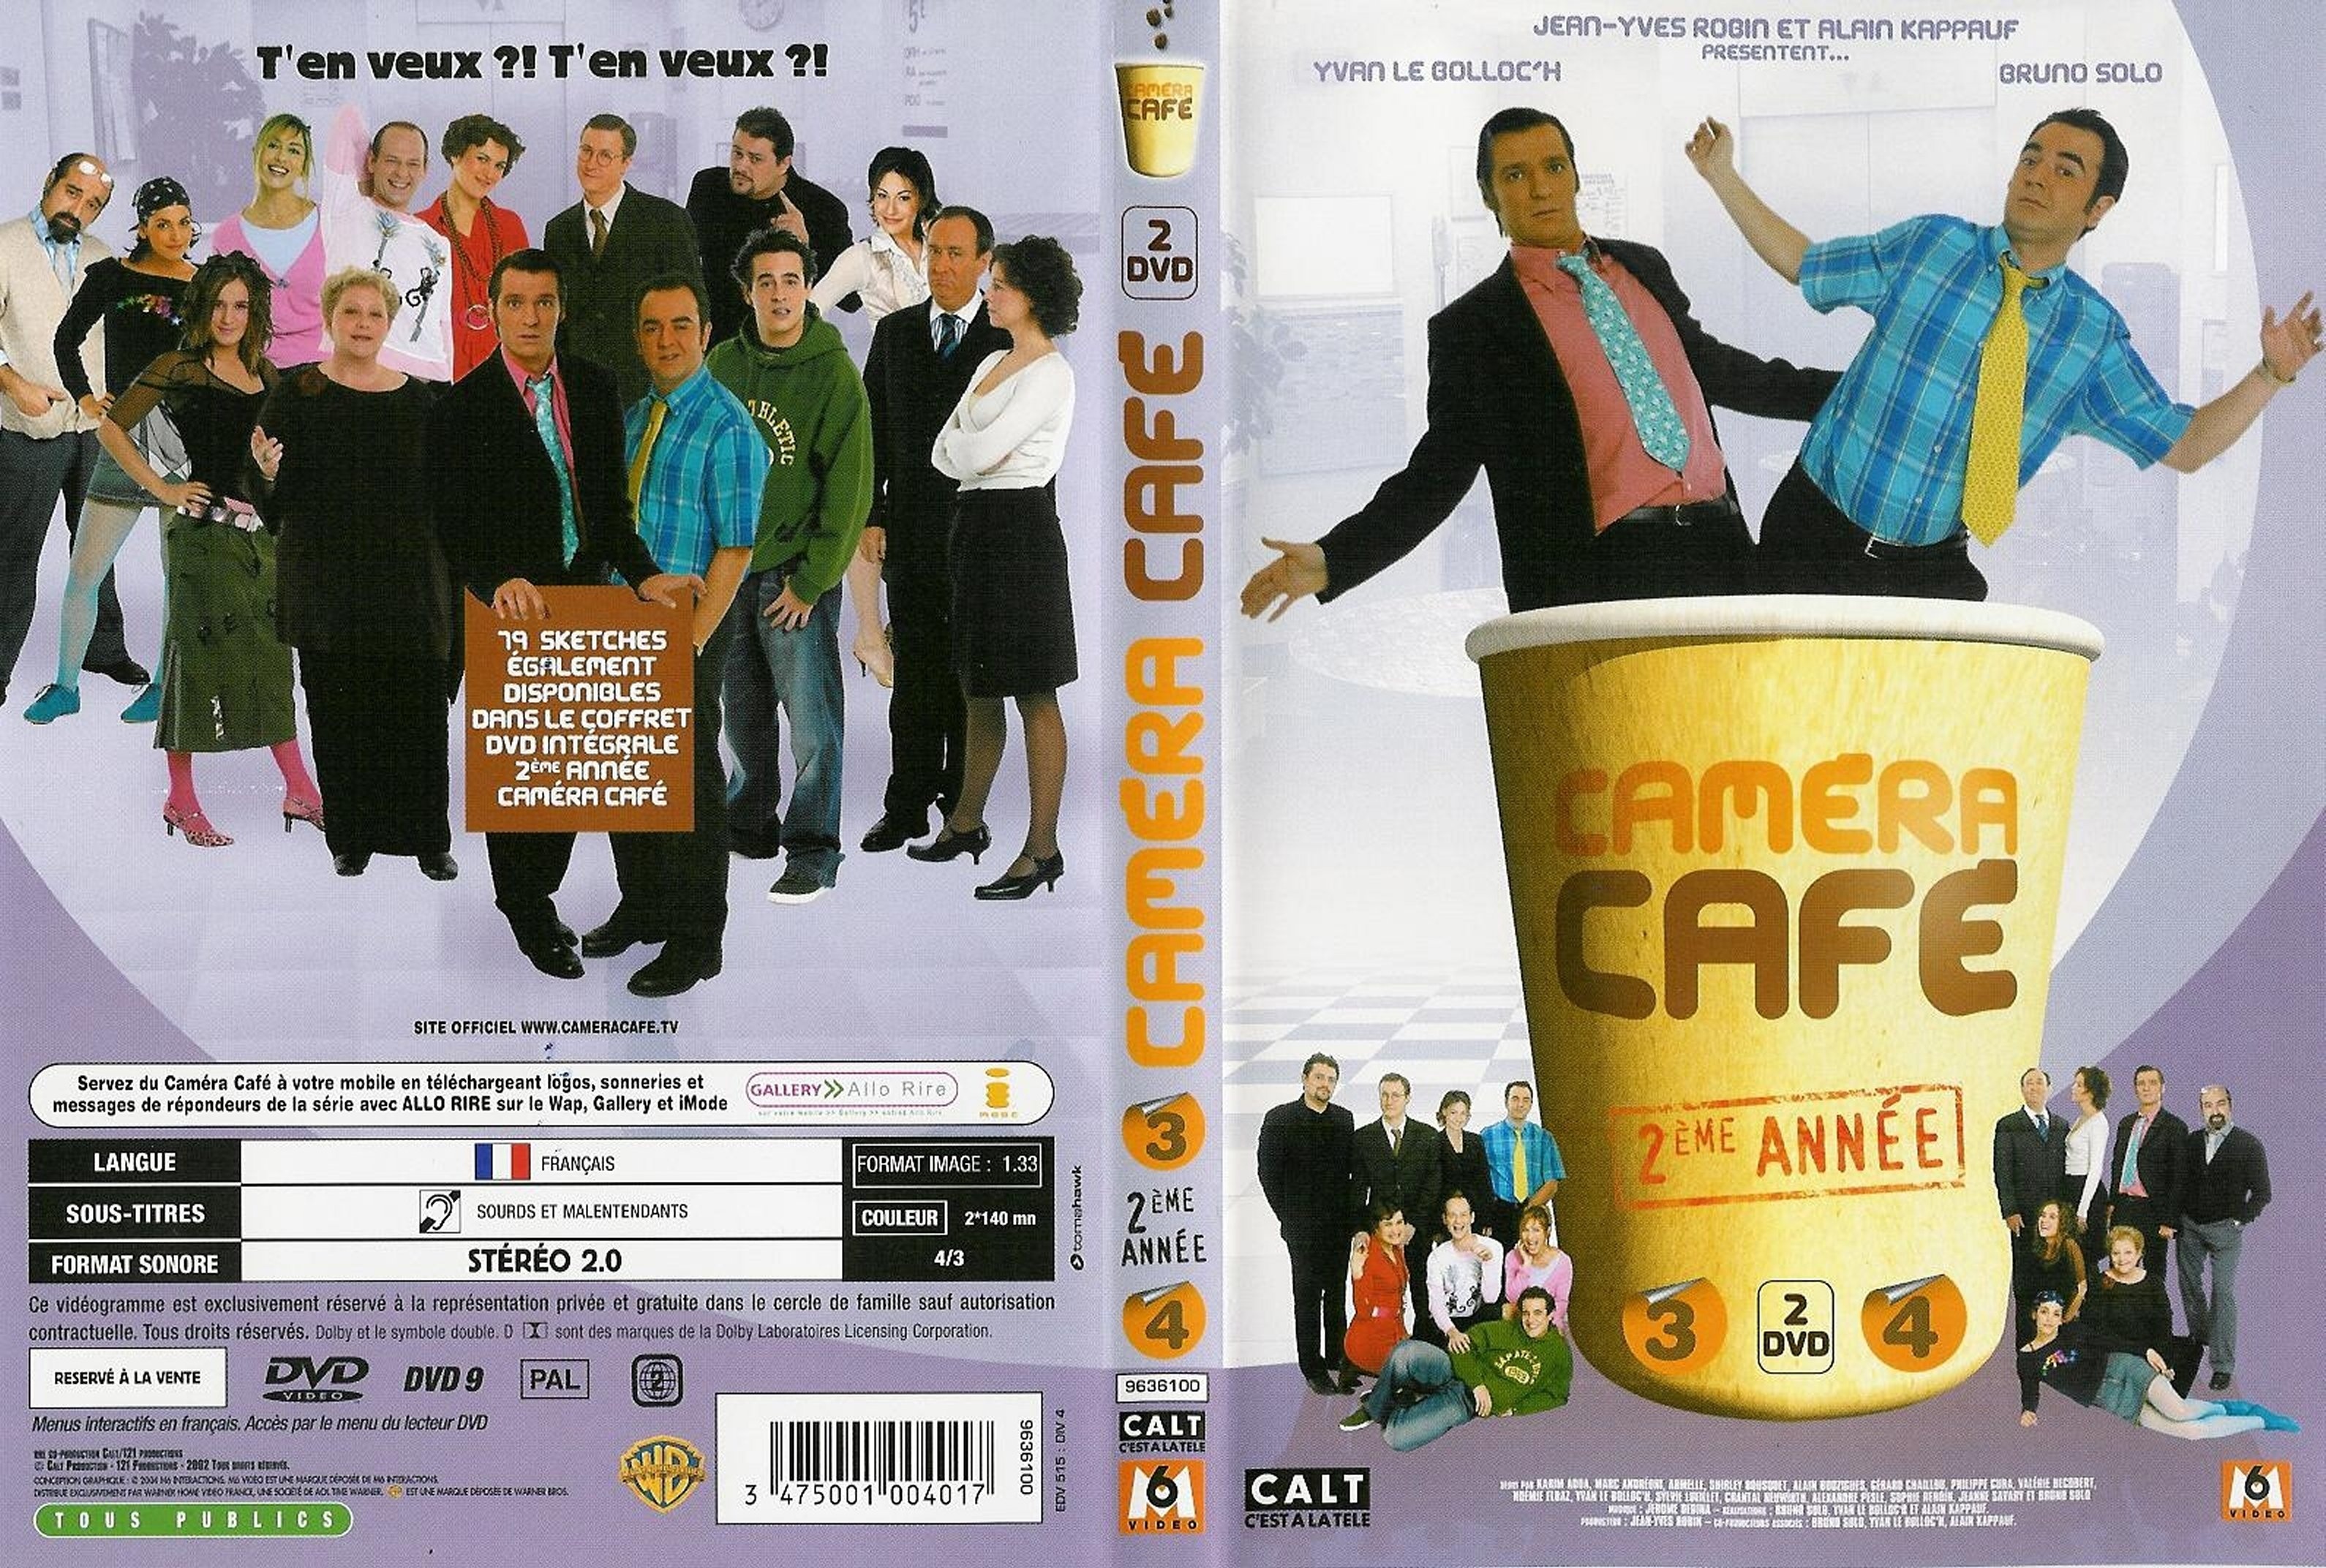 Jaquette DVD Camera cafe saison 2 vol 3 et 4